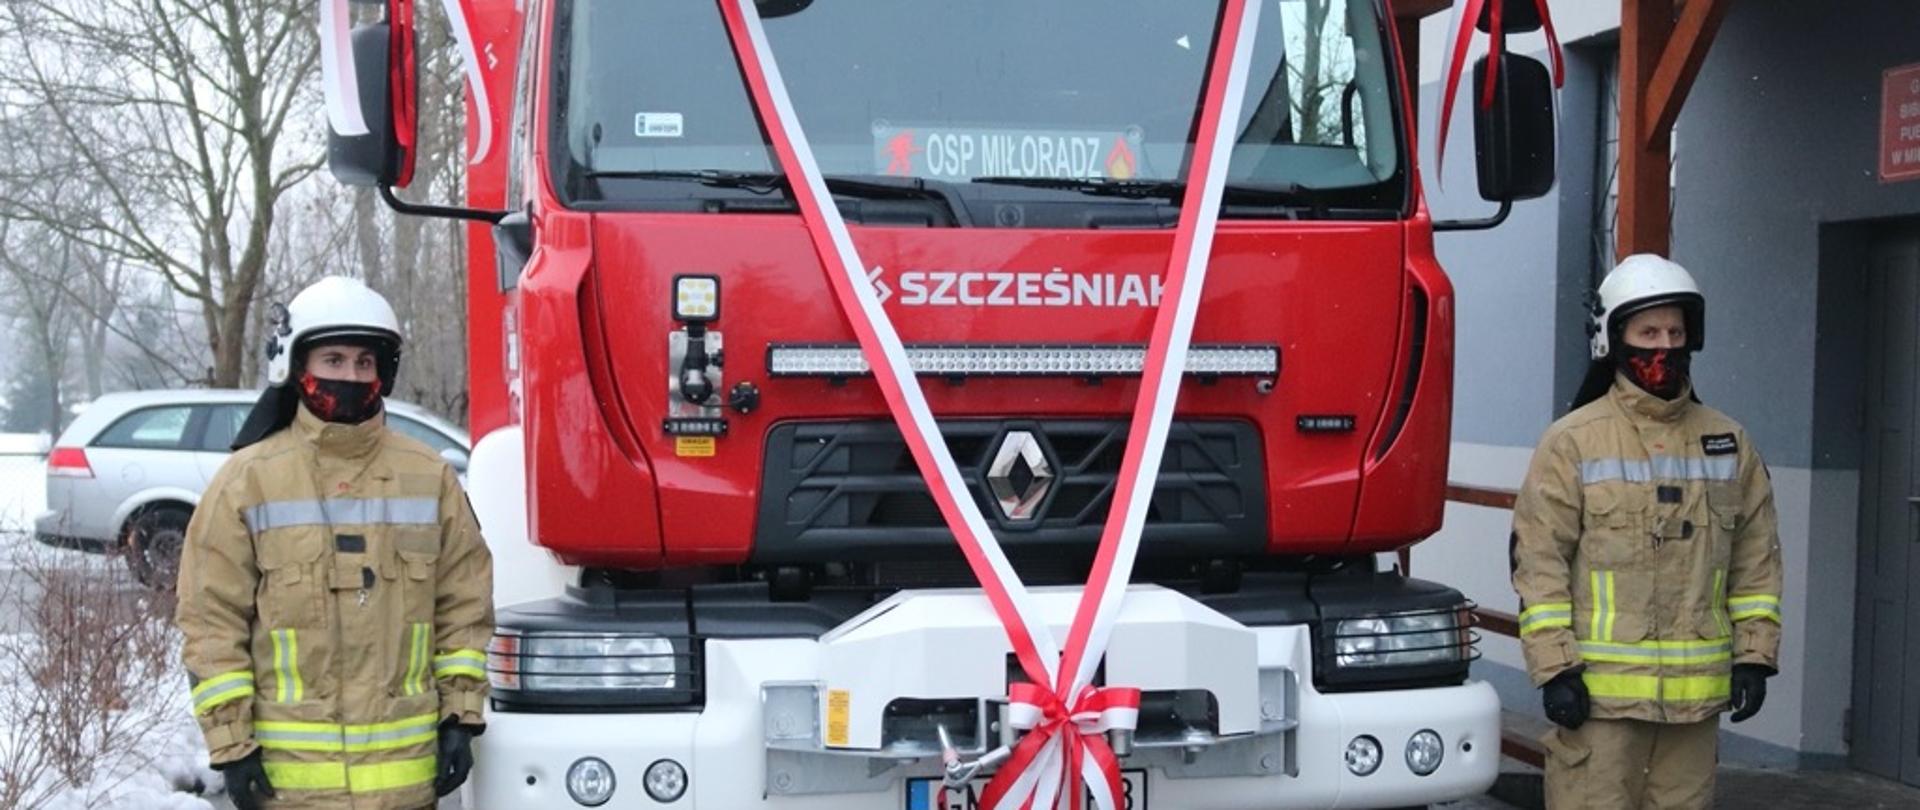 Fotografia przedstawia uroczyste przekazanie samochodu ratowniczo-gaśniczego dla OSP Miłoradz